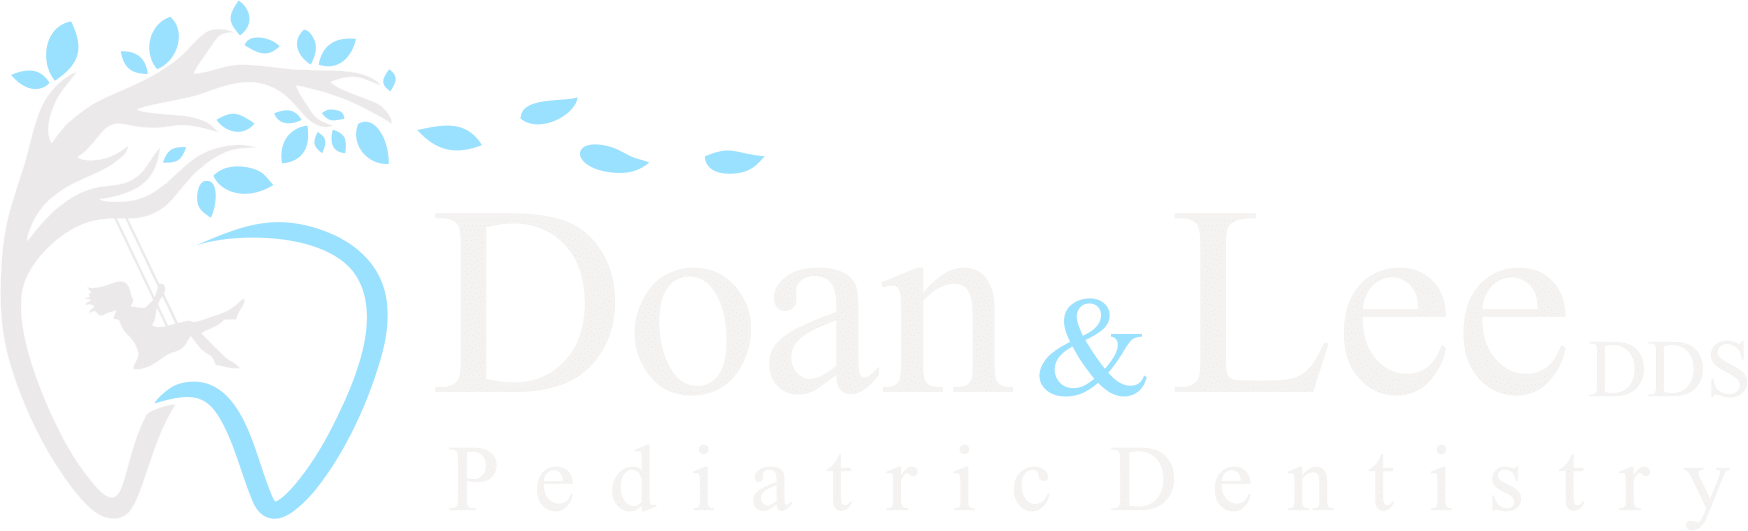 Doan & Lee Pediatric Dentistry